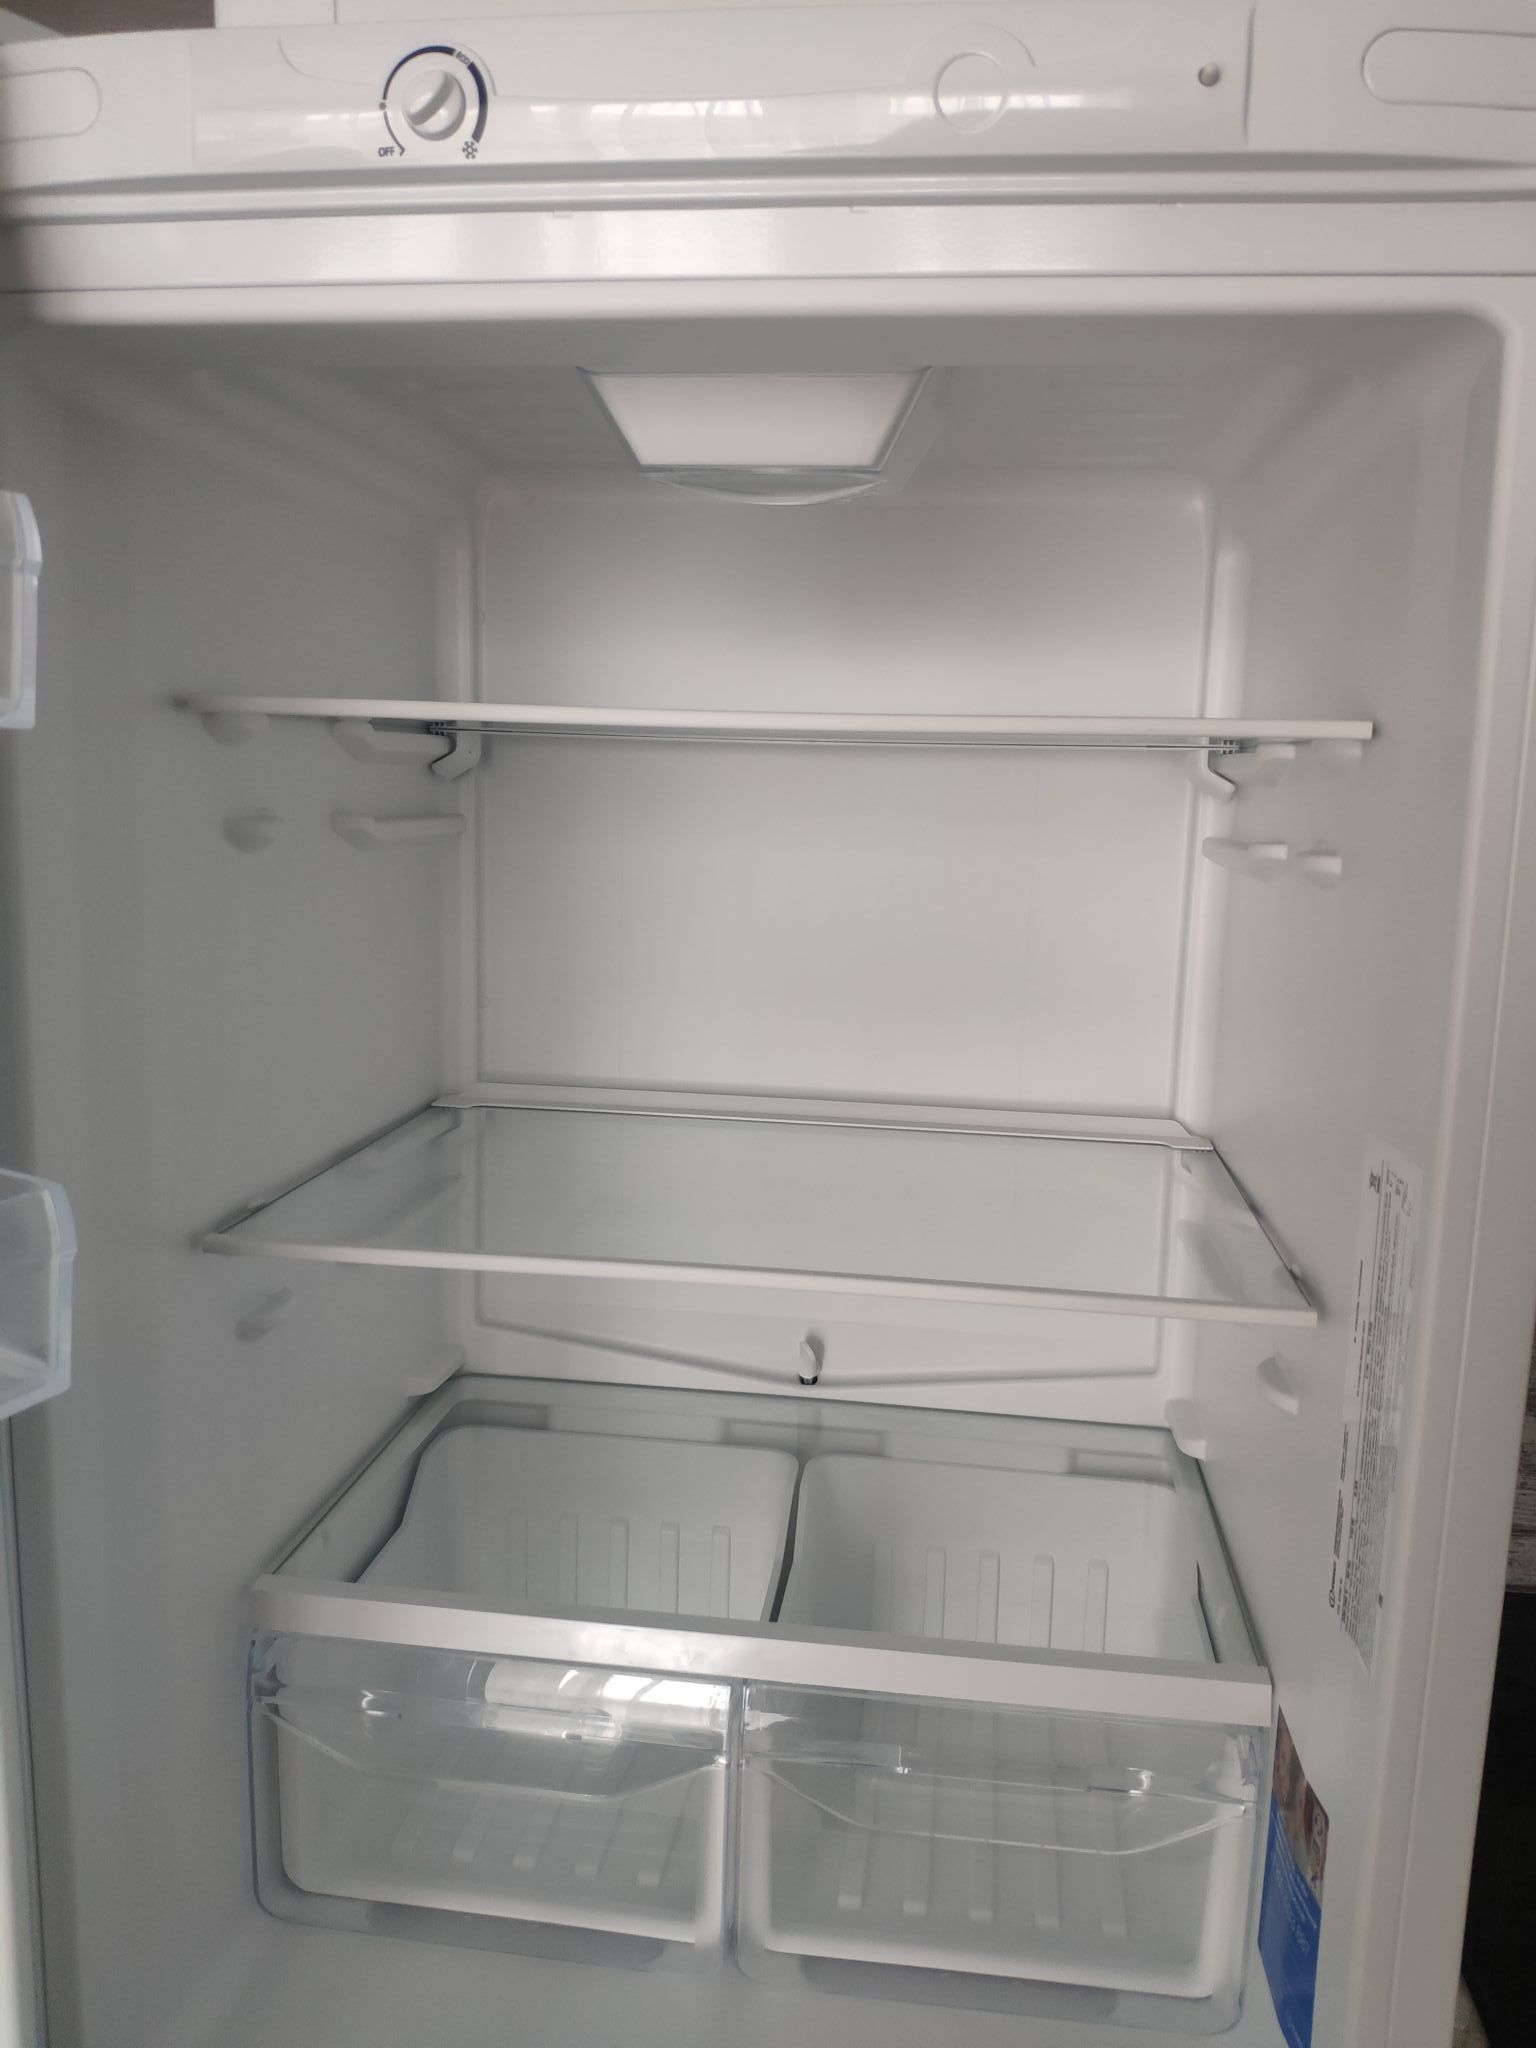 Как выглядит индезит. Холодильник Индезит ds4160. Холодильник Индезит 4160w. Холодильник Индезит 23999.